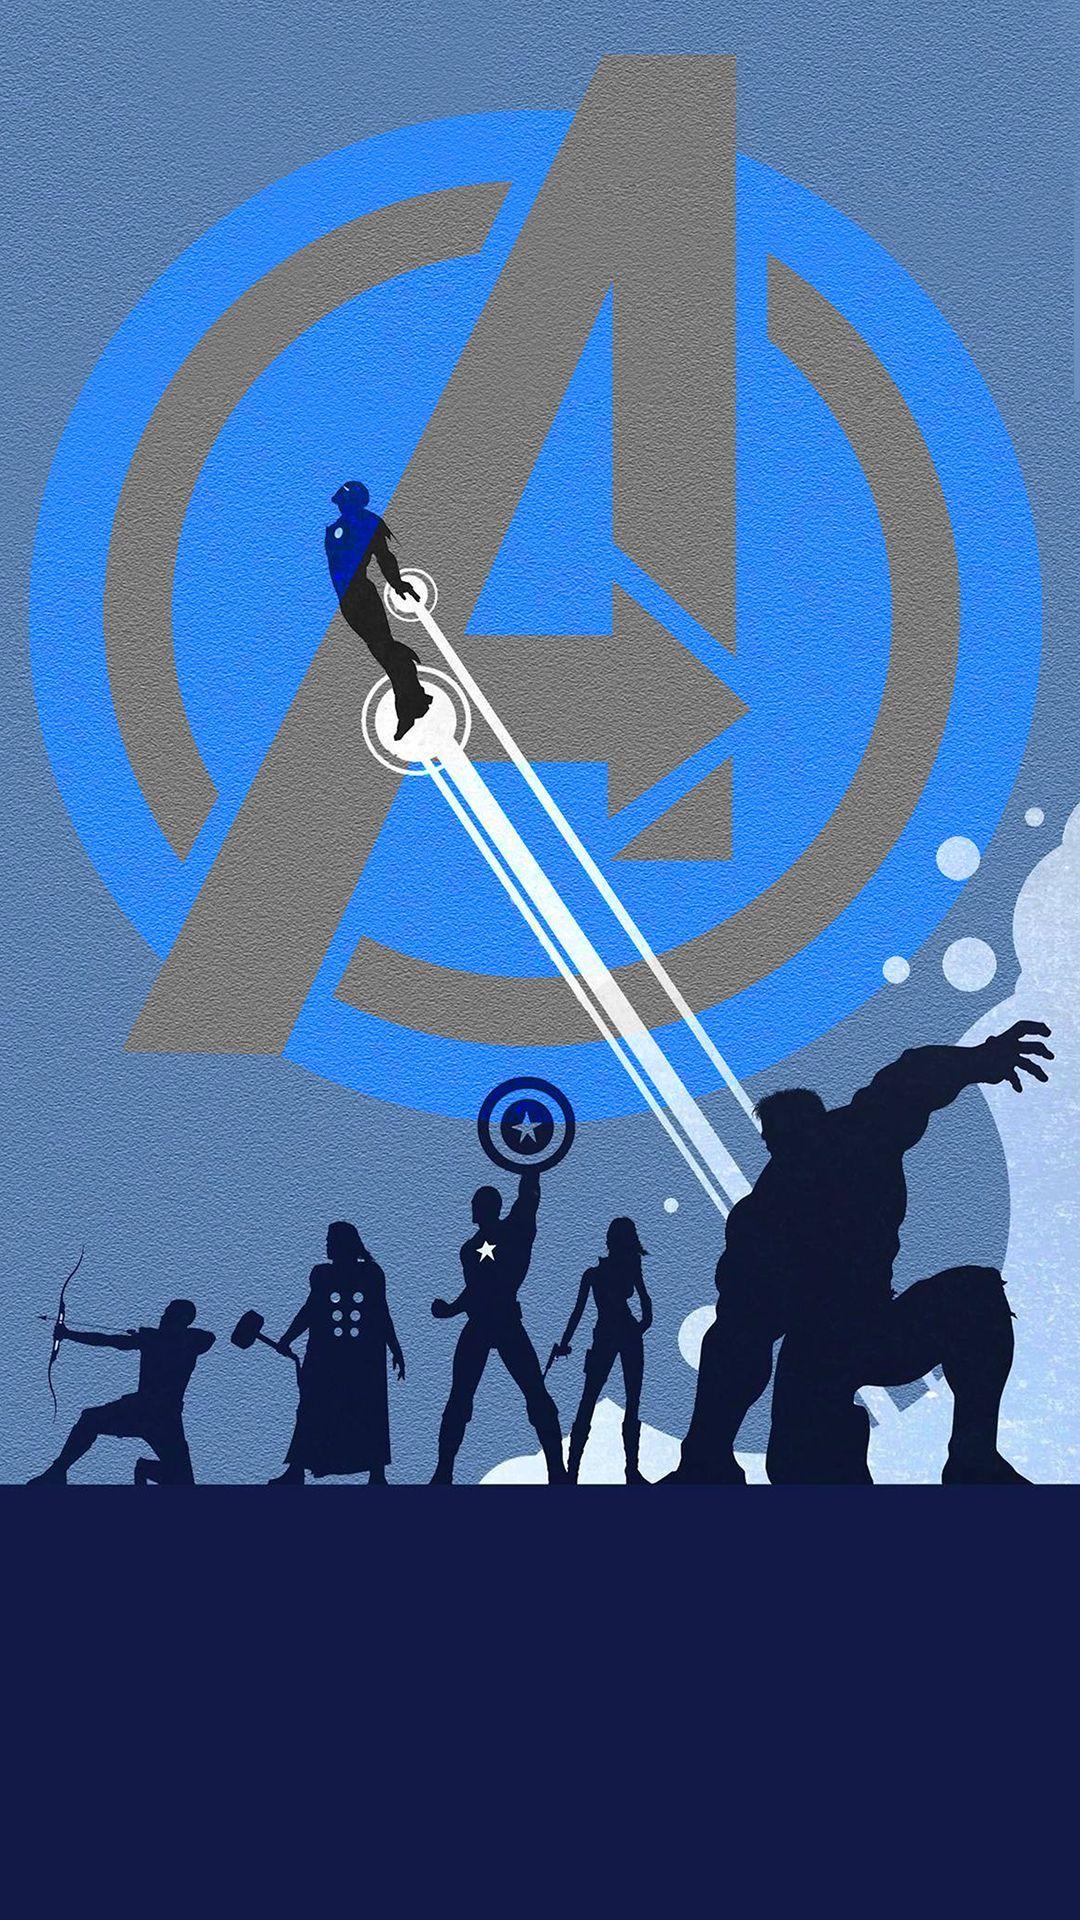 40 Gambar Avengers Logo Wallpaper Hd Download for Android Mobile terbaru 2020